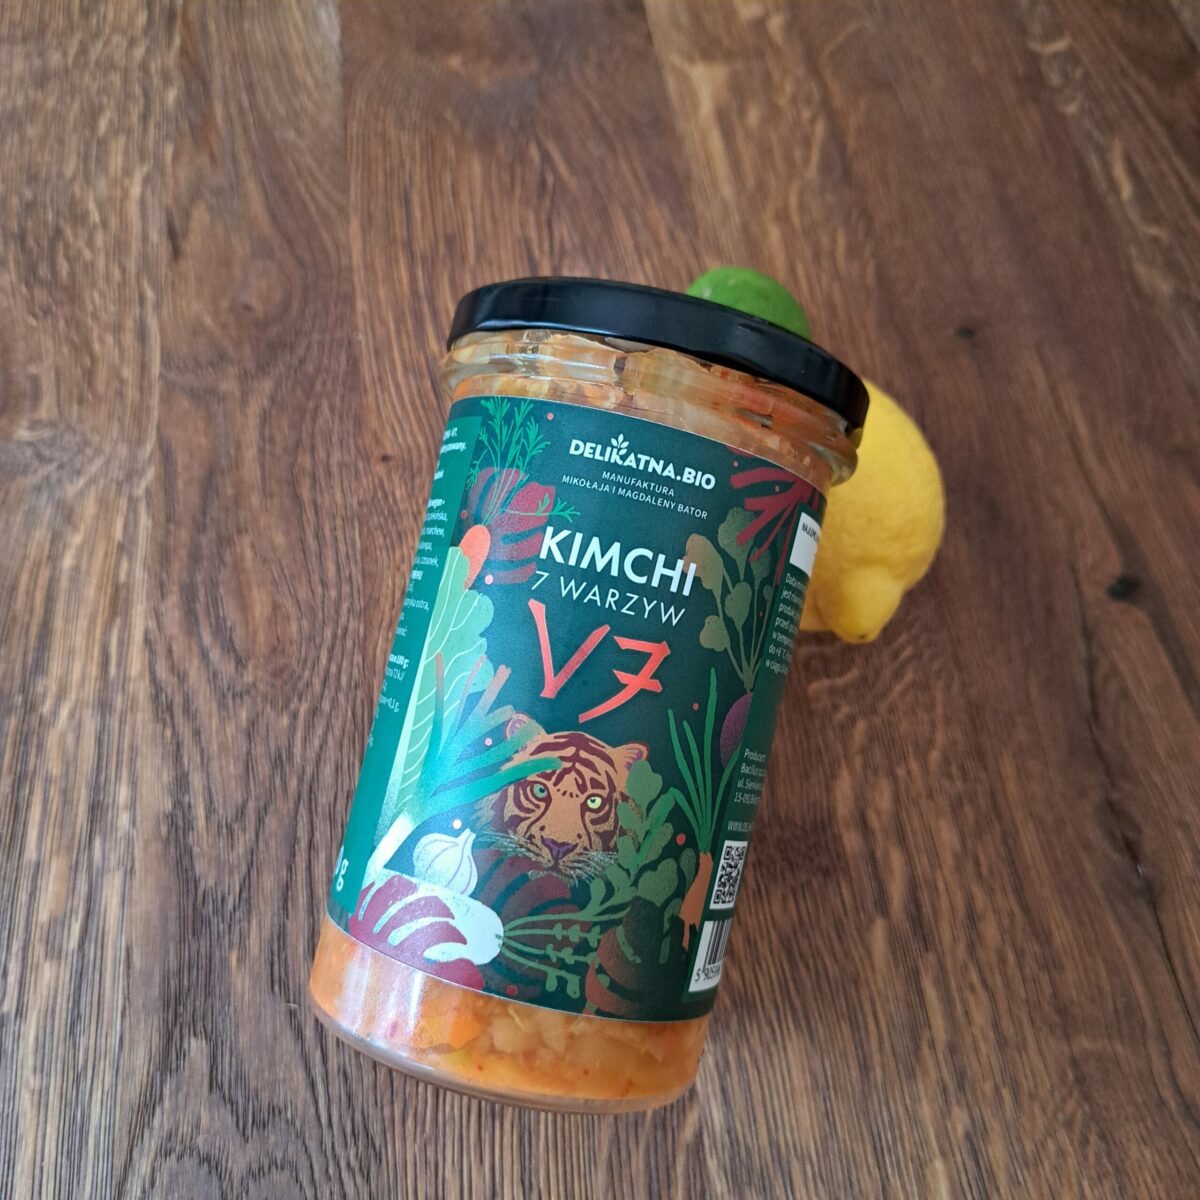 Kimchi 7 warzyw